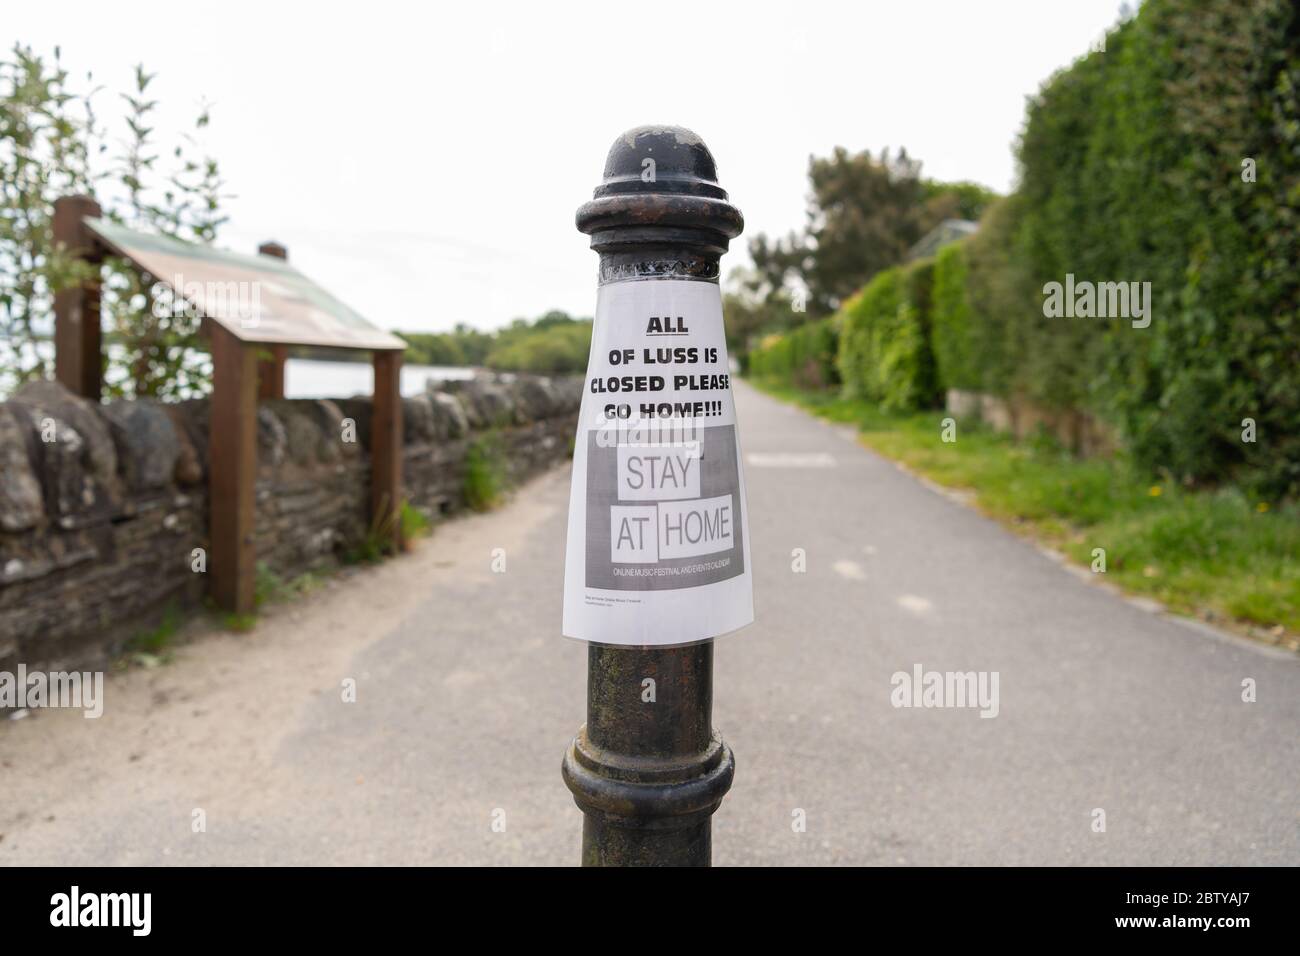 Luss, Loch Lomond, Escocia, Reino Unido. 28 de mayo de 2020. Coronavirus bloqueo relajación preocupaciones. El aparcamiento y otras instalaciones a partir de esta mañana permanecen cerrados en el pueblo turístico hotspot como Nicola Sturgeon anuncia una ligera relajación en las reglas de cierre. Aunque mucho más de 5 millas de cualquier ciudad en días calurosos, los visitantes todavía han estado llegando en números a pesar del cierre, y los residentes están preocupados de que mañana verá las calles y el estrecho paseo lleno de personas con distanciamiento social imposible de mantener. Crédito: Kay Roxby/Alamy Live News Foto de stock